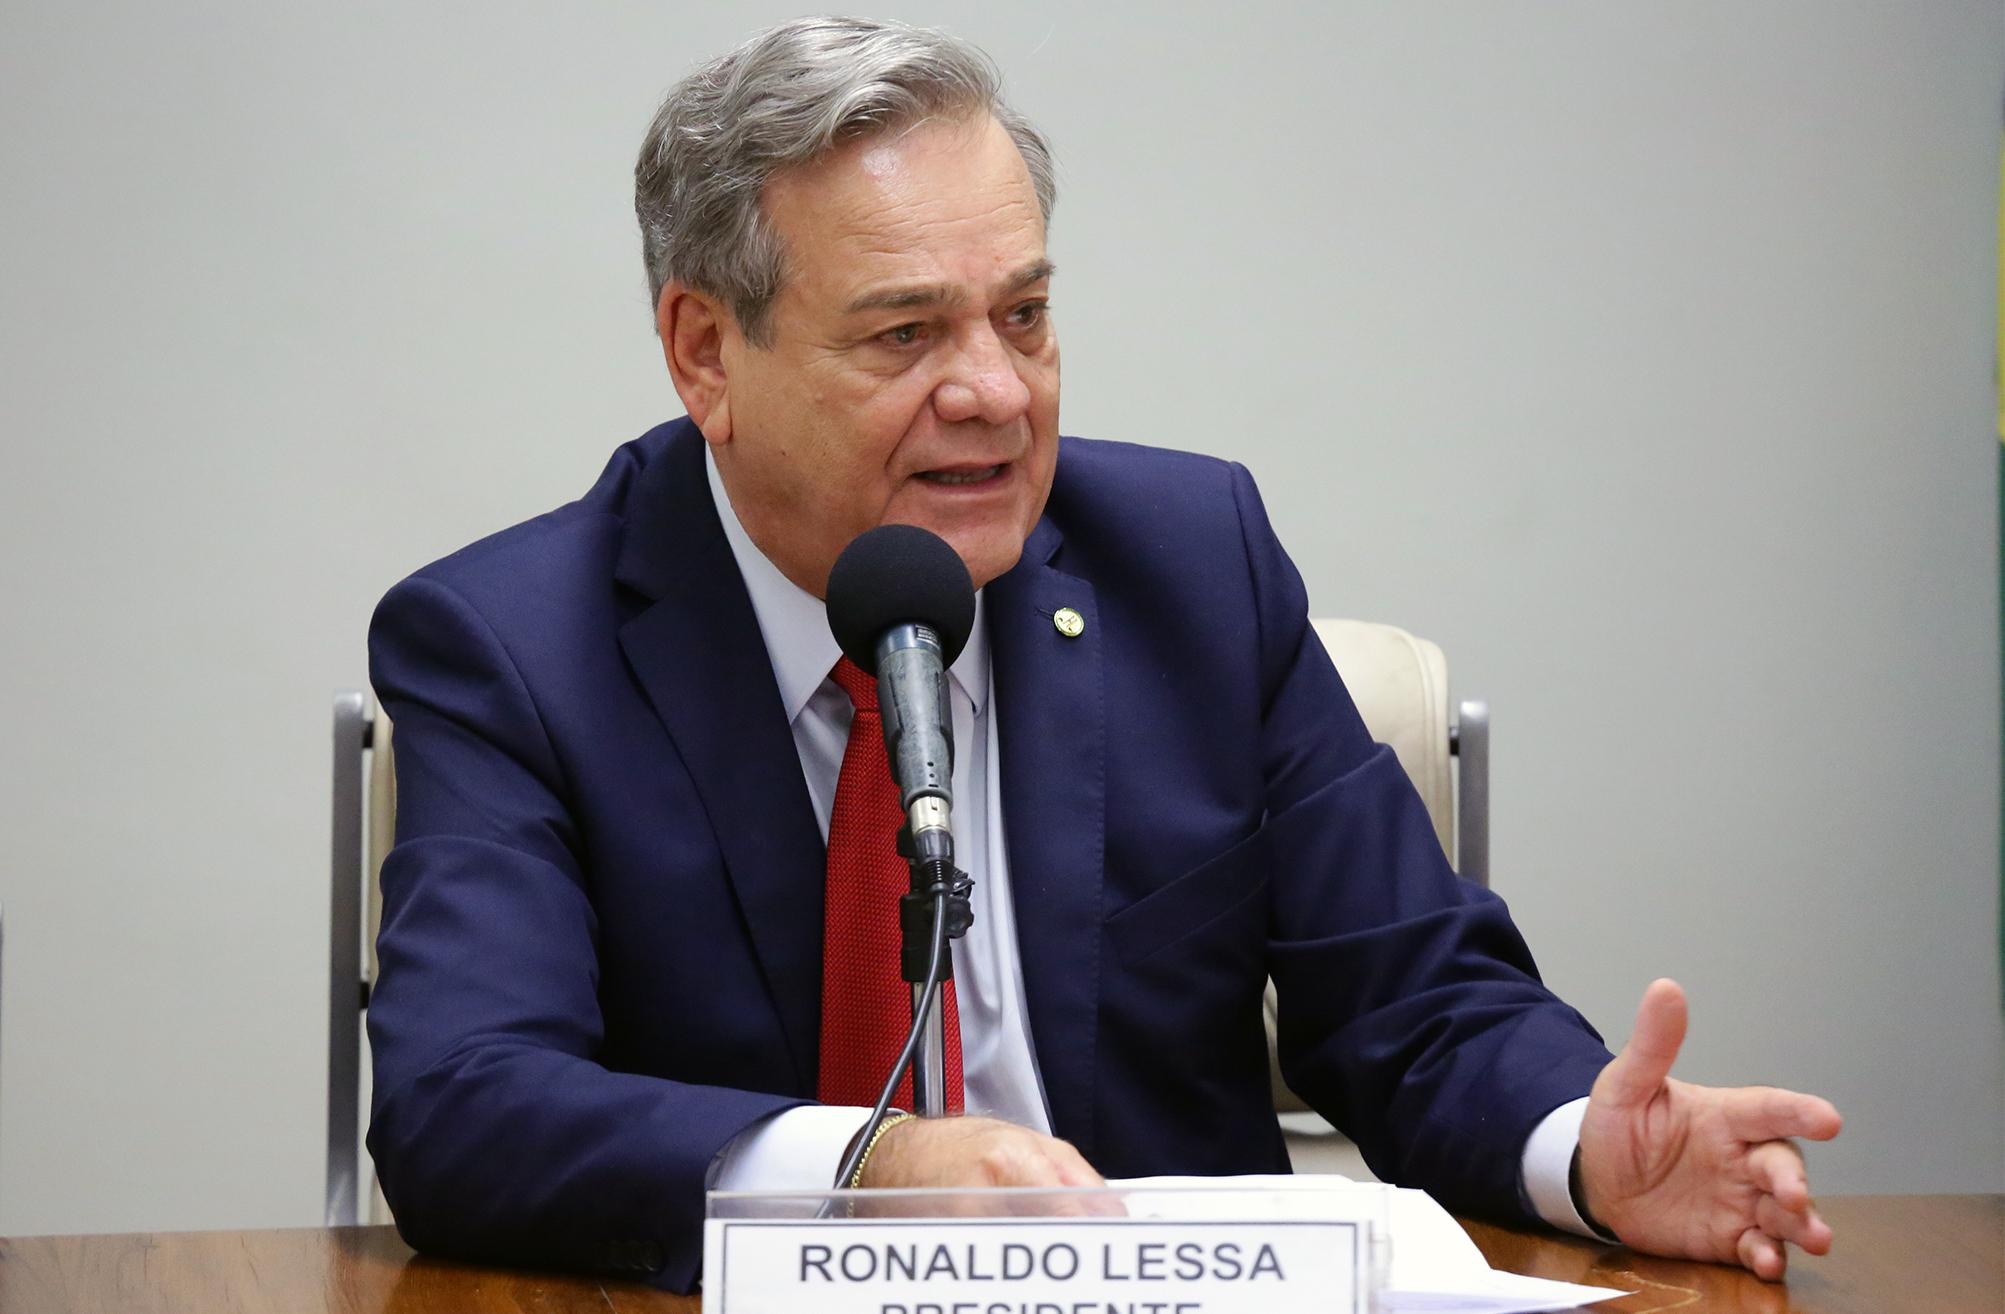 Nomeação de Ronaldo Lessa para a Agricultura gera expectativas no setor